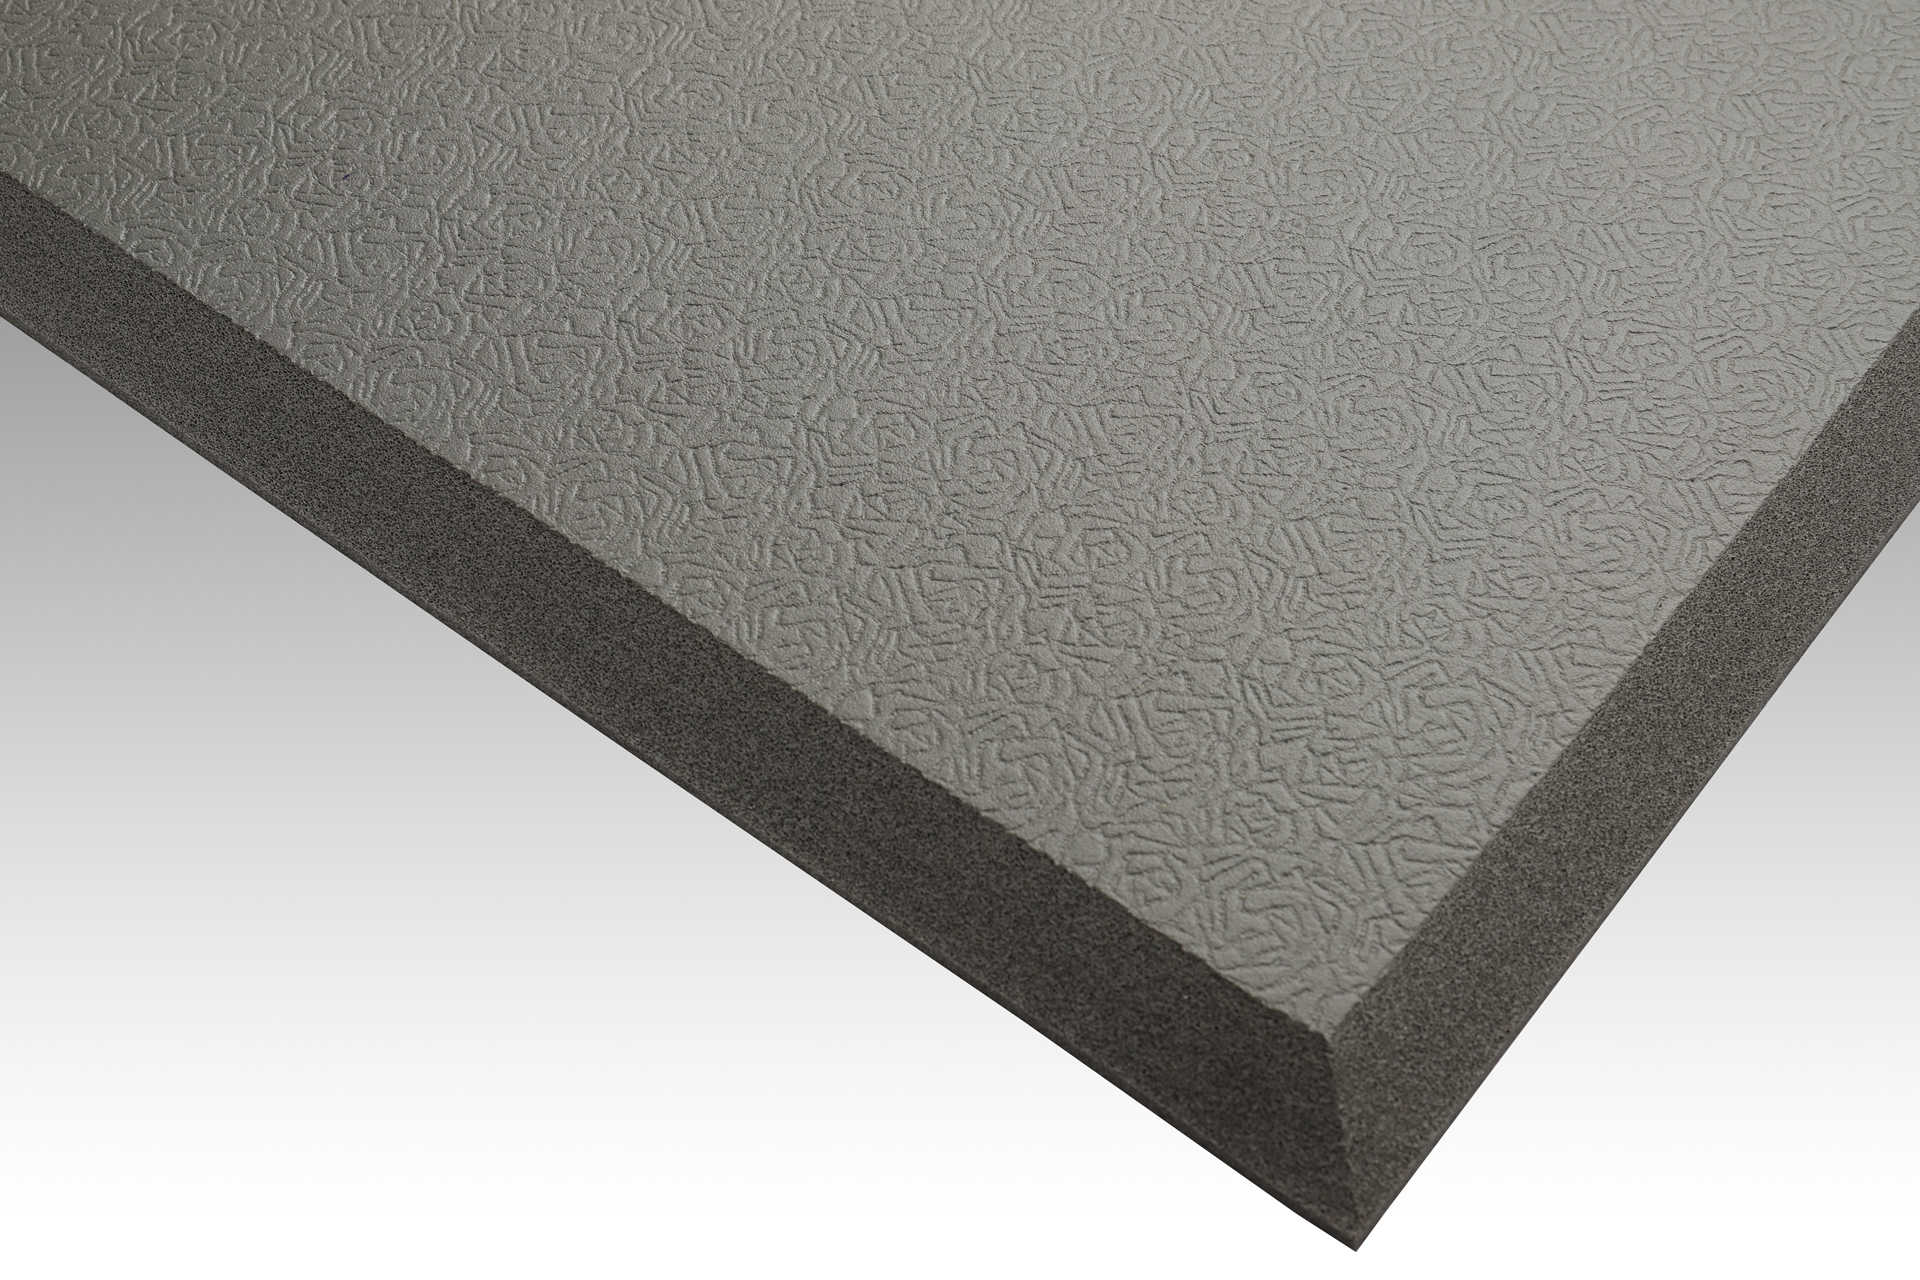 Fall mat / Bedside mat / safety protection mat